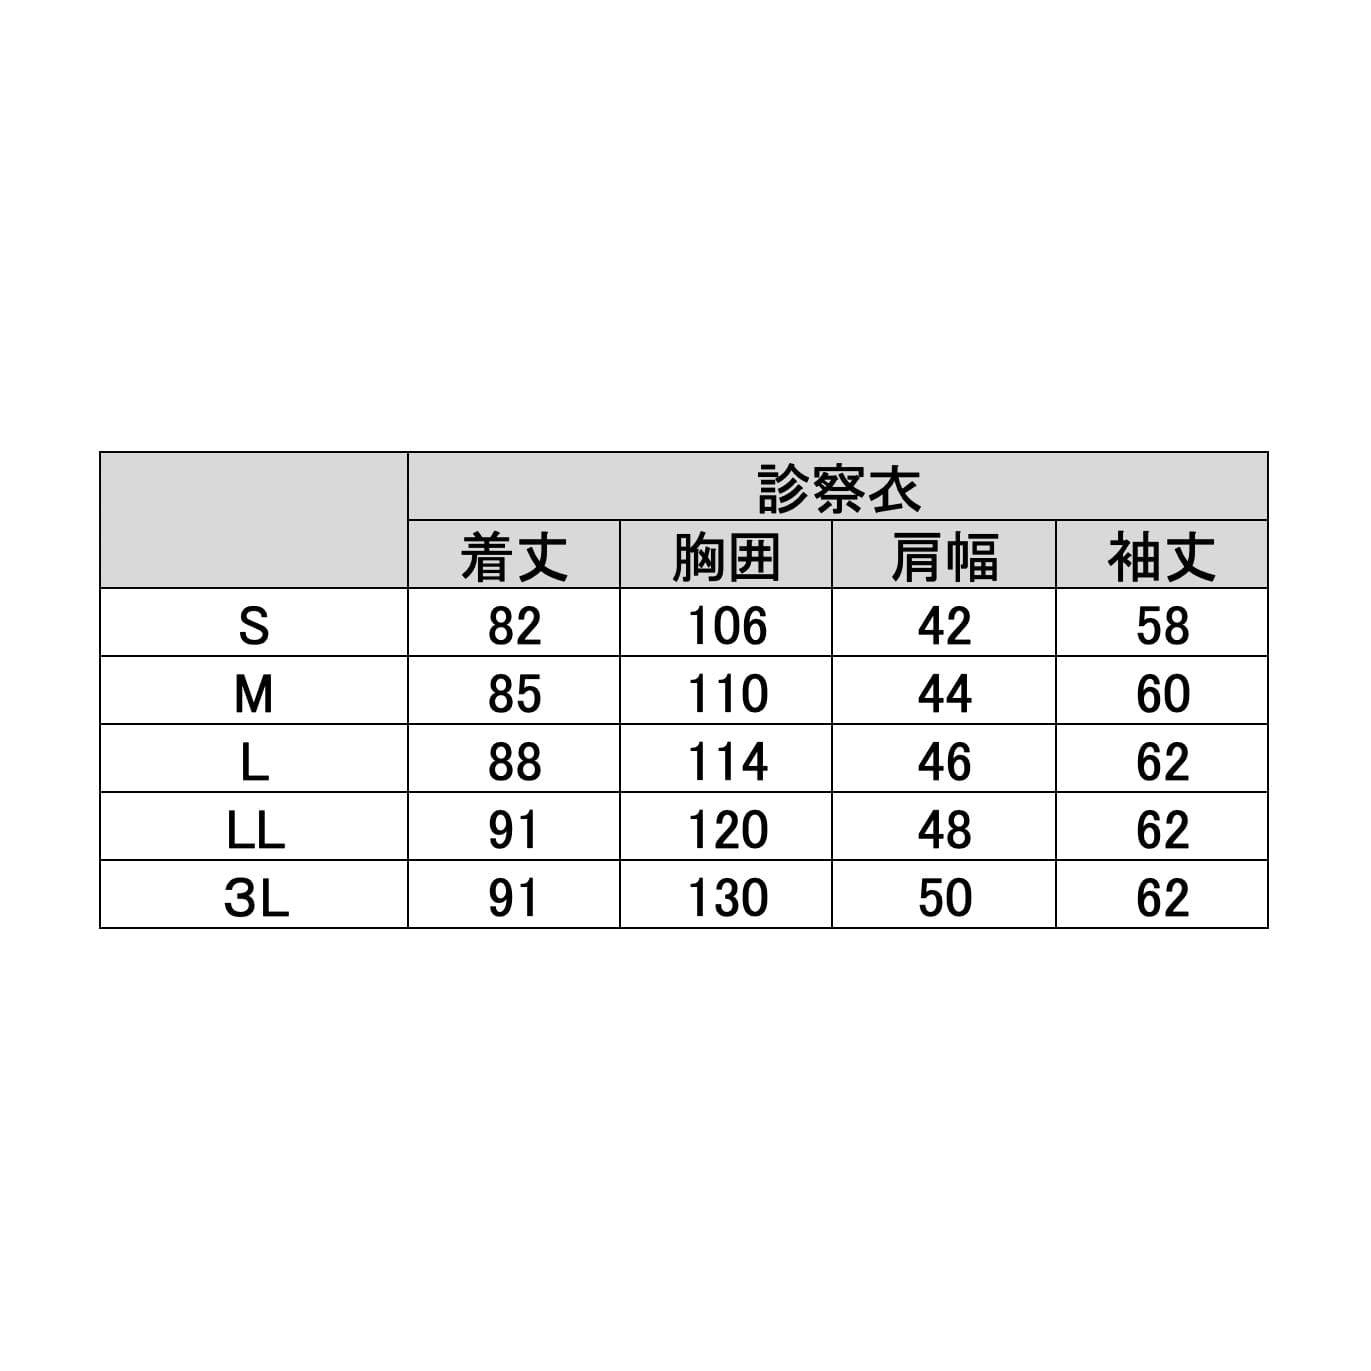 メンズ診察衣　KZN113-40　S　ホワイトＳ【ＫＡＺＥＮ】(KZN113-40)(24-7017-00-01)